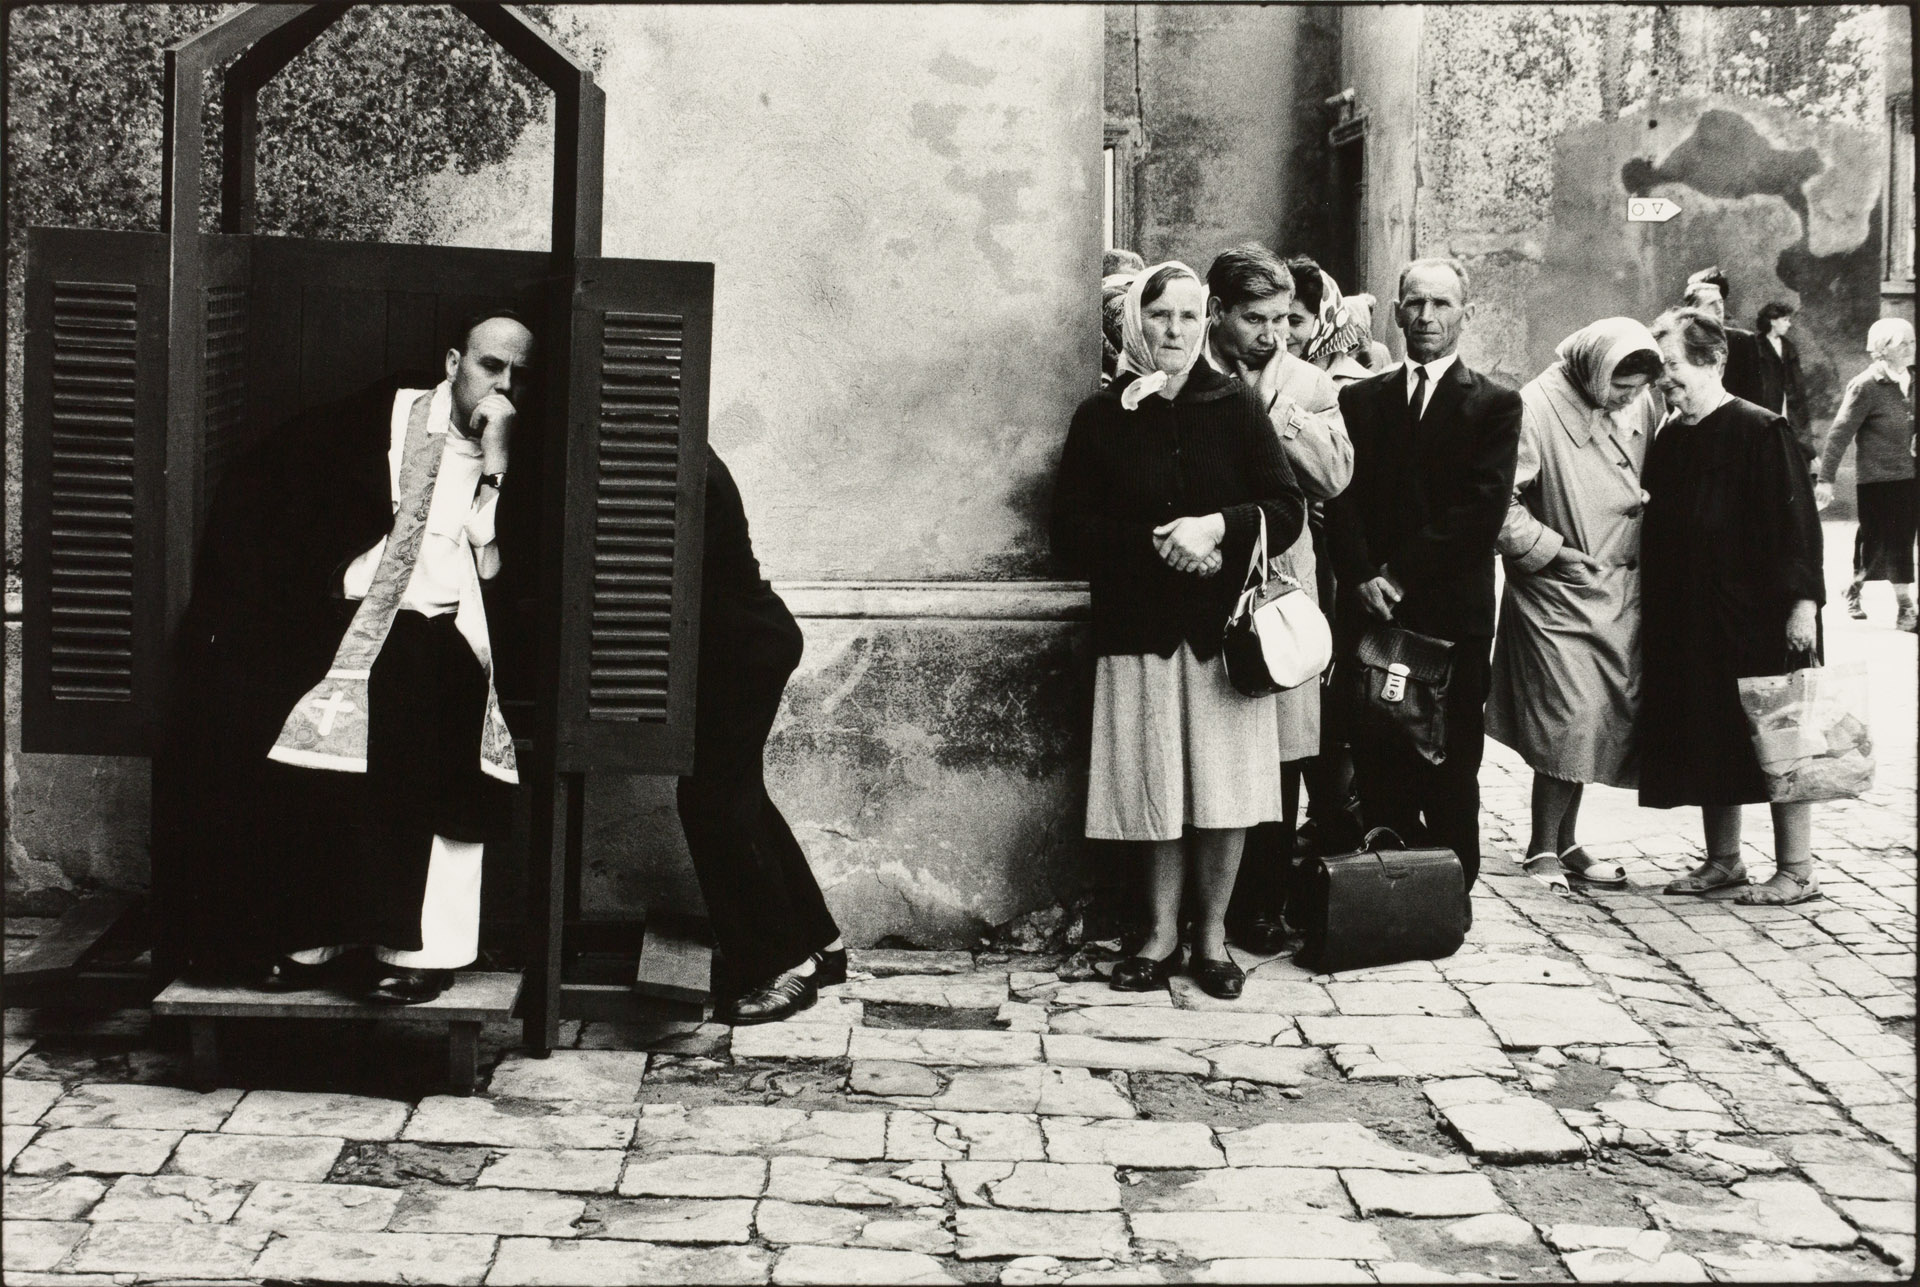 ELLIOTT ERWITT (* 1928) - Open Air Confession, Poland 1964